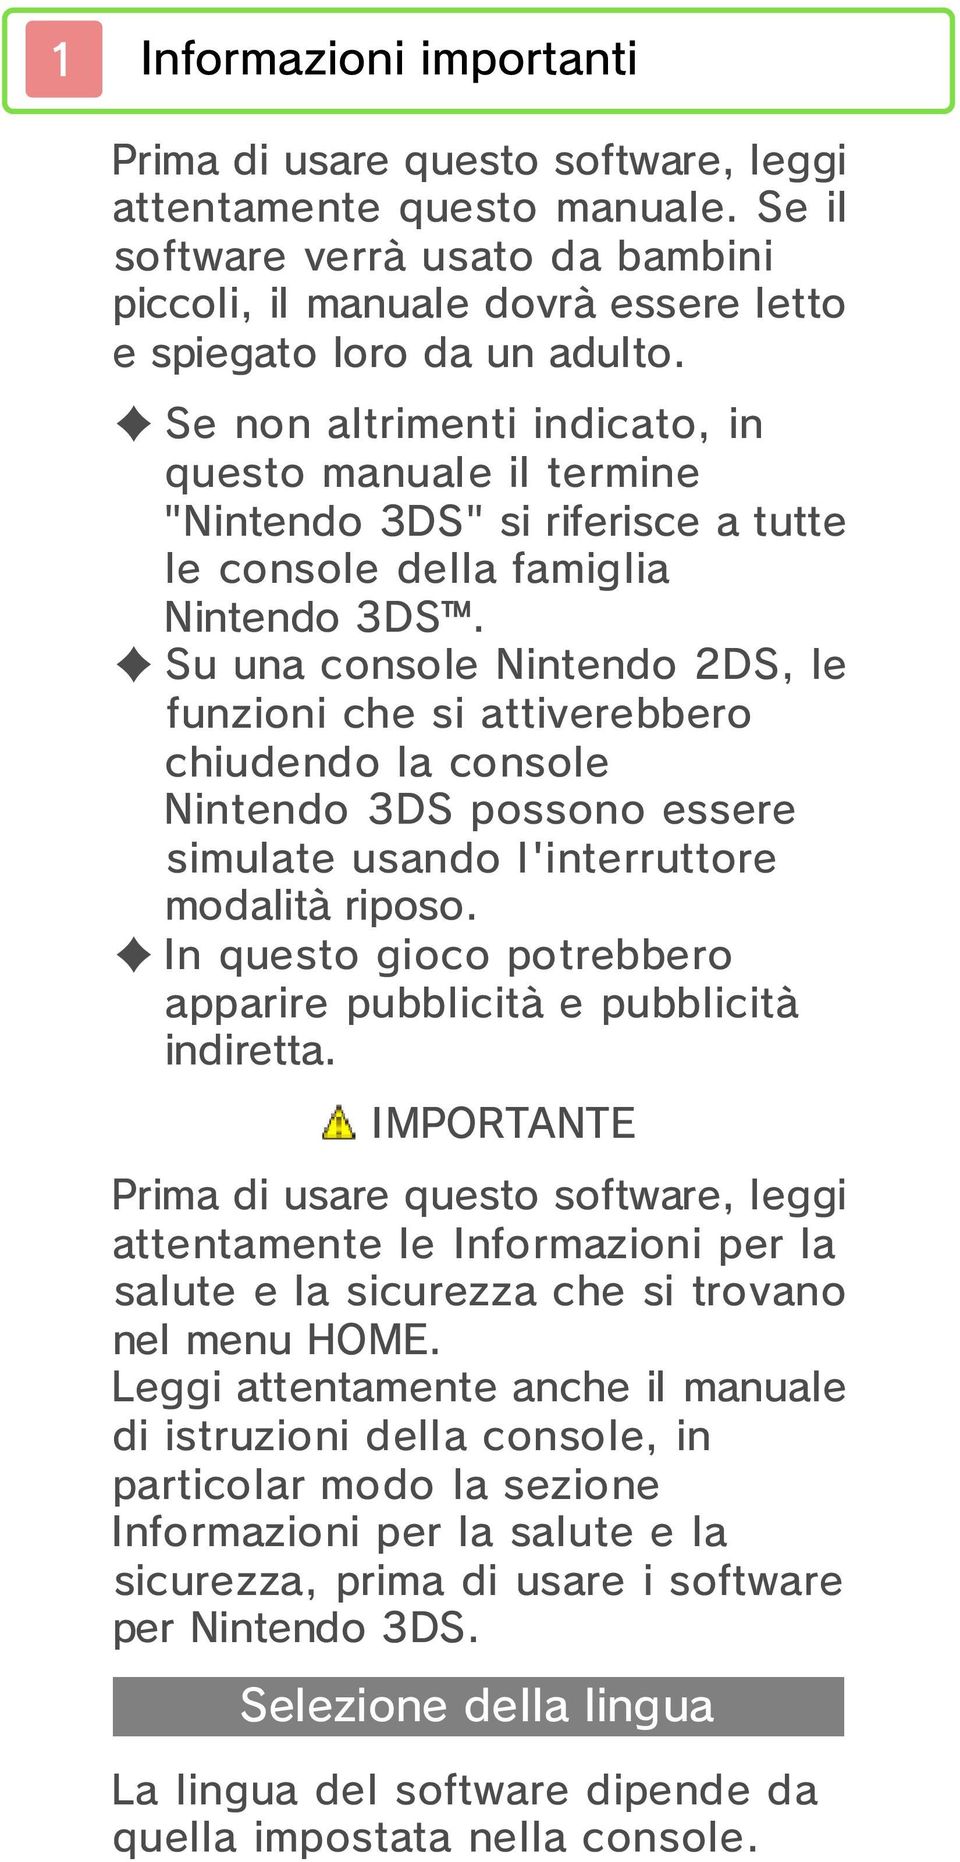 Su una console Nintendo 2DS, le funzioni che si attiverebbero chiudendo la console Nintendo 3DS possono essere simulate usando l'interruttore modalità riposo.